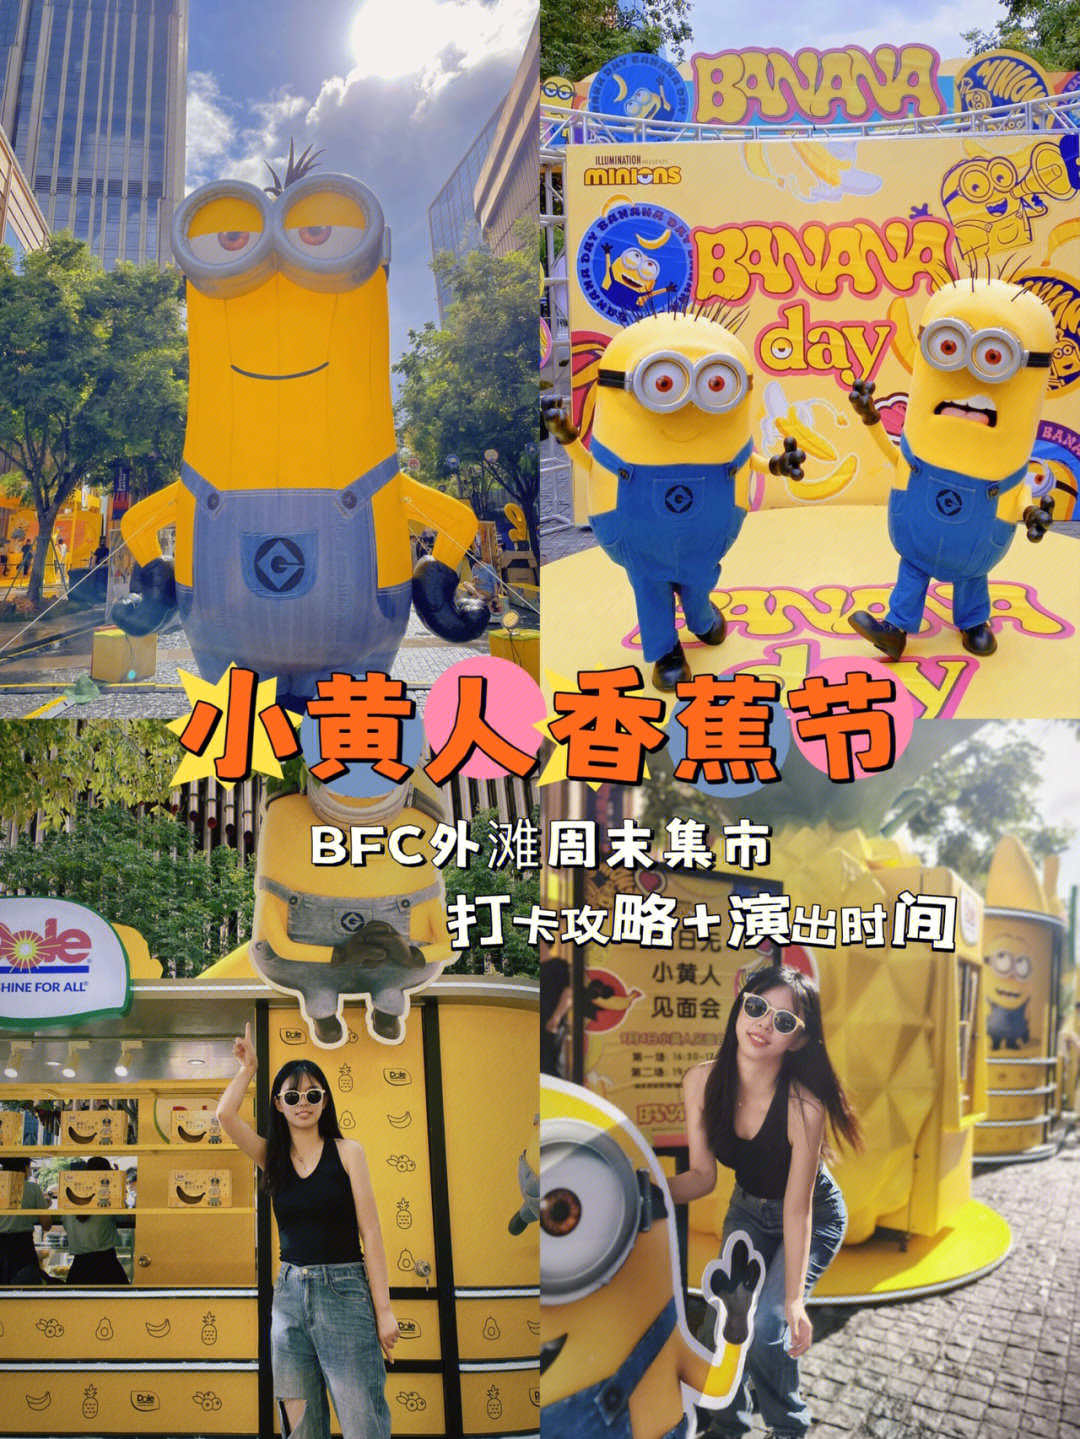 上海16号线香蕉梗图片